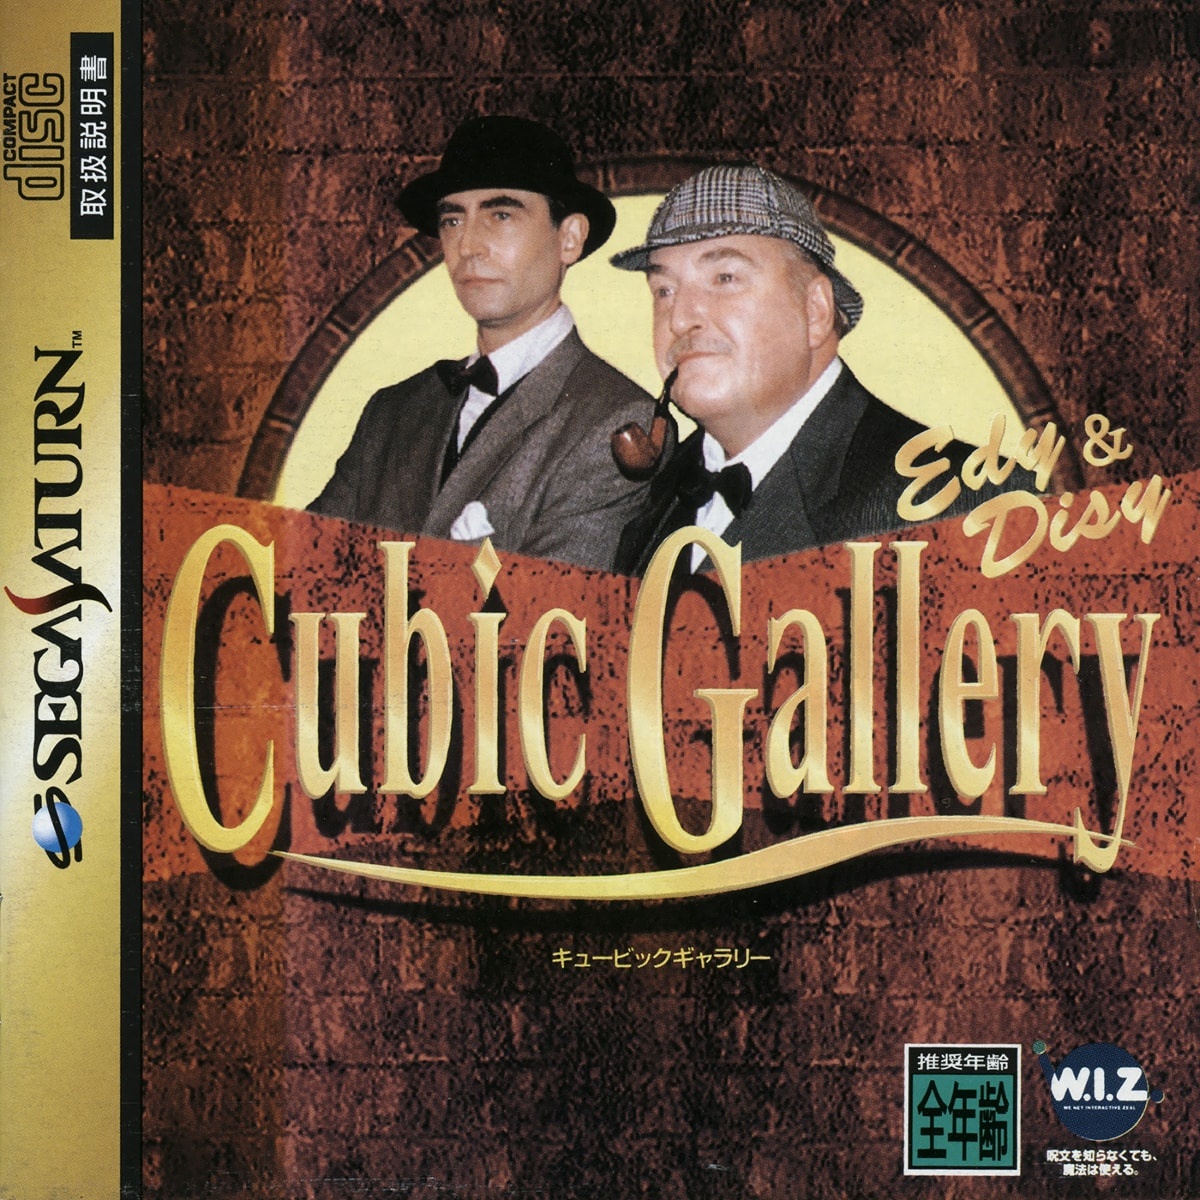 Capa do jogo Cubic Gallery